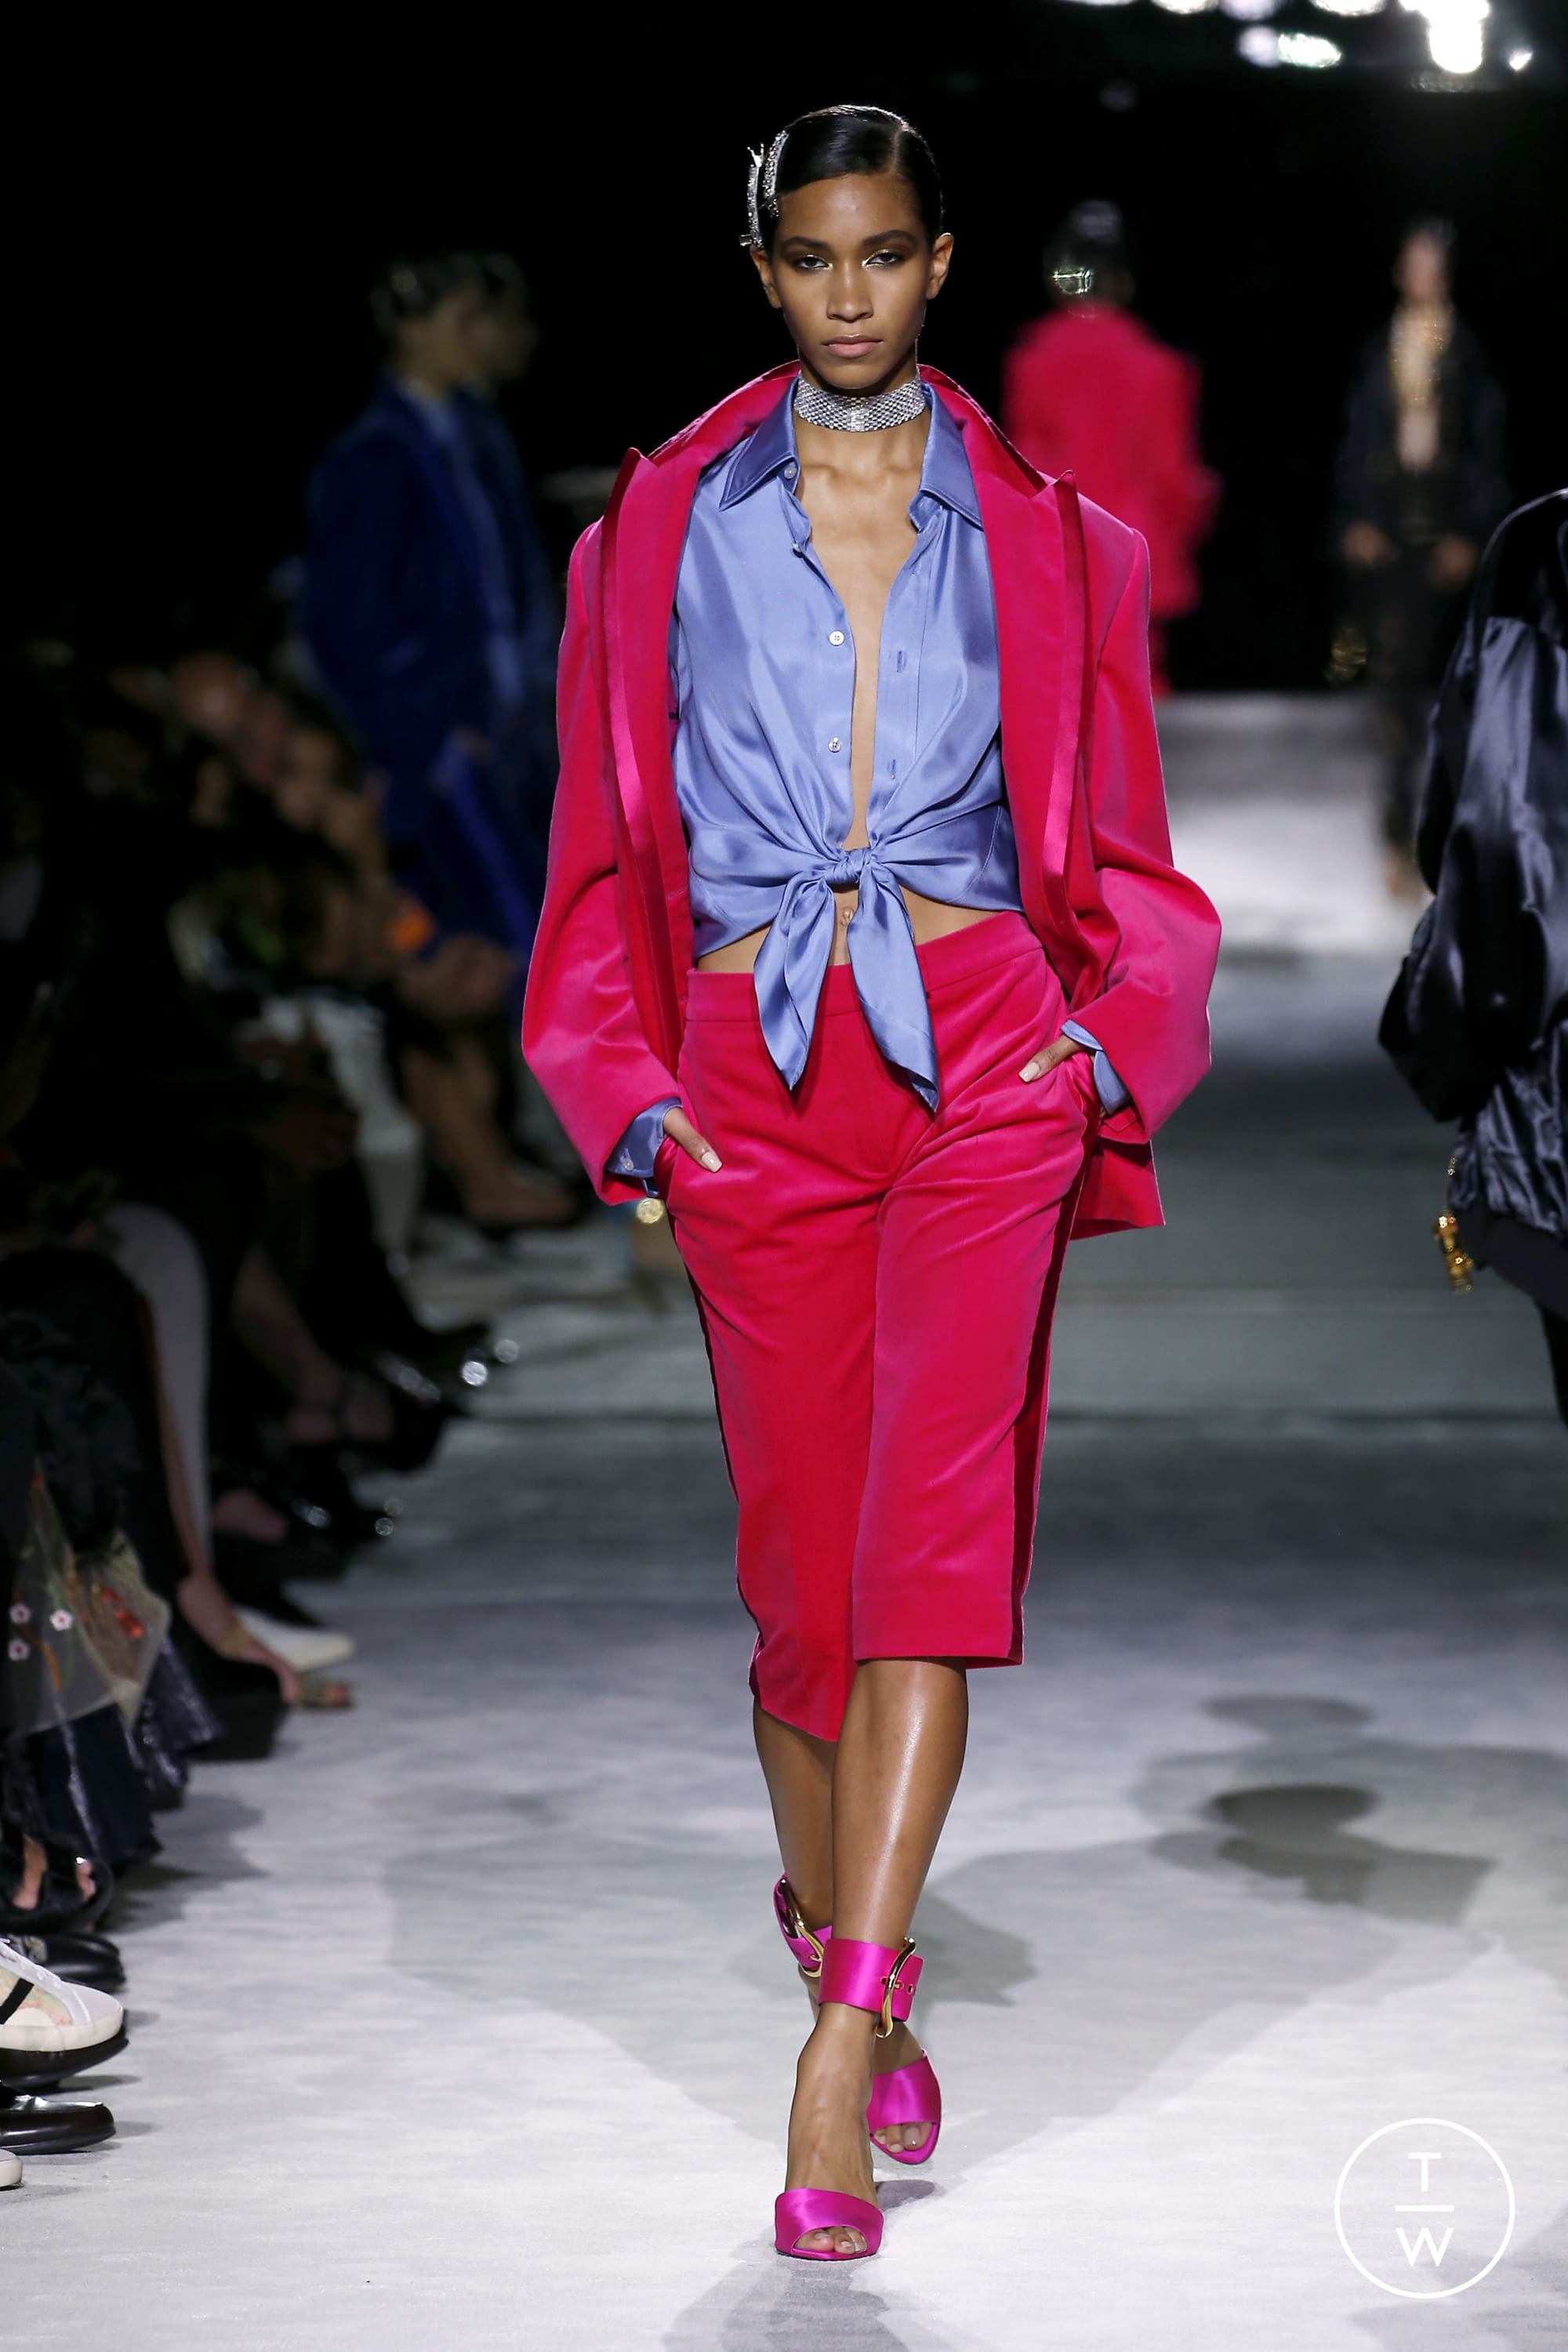 Tom Ford SS22 womenswear #17 - Tagwalk: The Fashion Search Engine